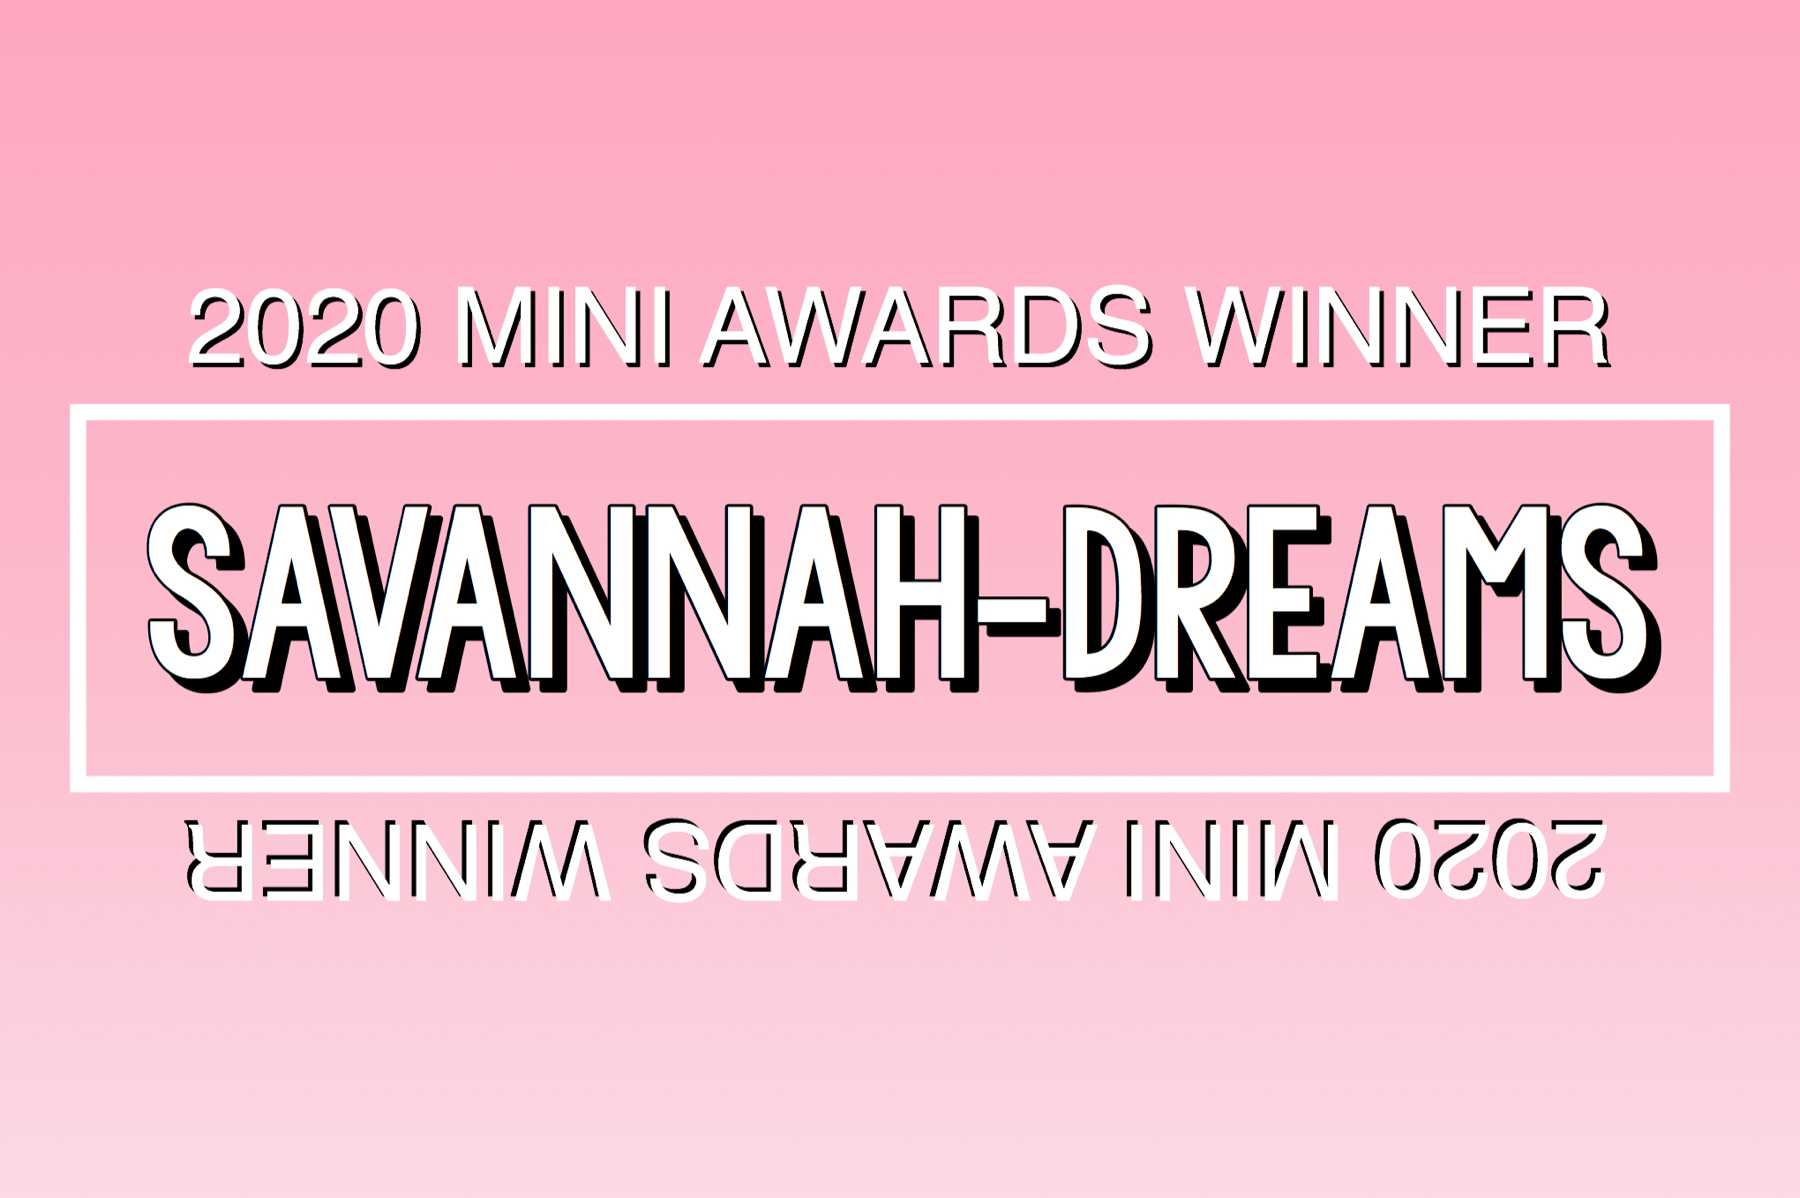 2020 Mini Awards Winner @savannah-dreams!